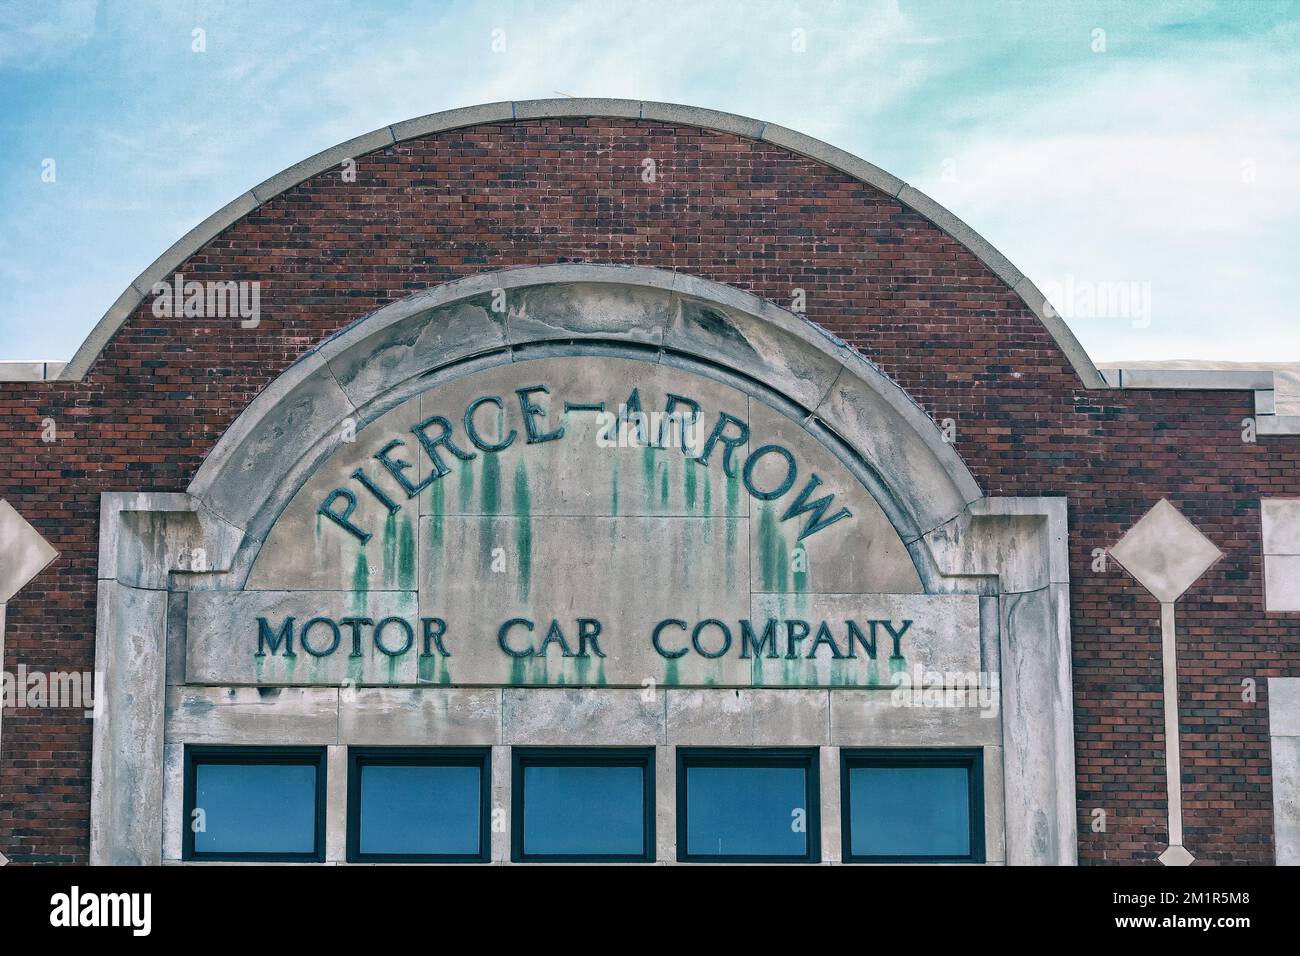 Pierce - Arrow Motor car Company signe de l'usine. Buffalo New York États-Unis d'Amérique Banque D'Images